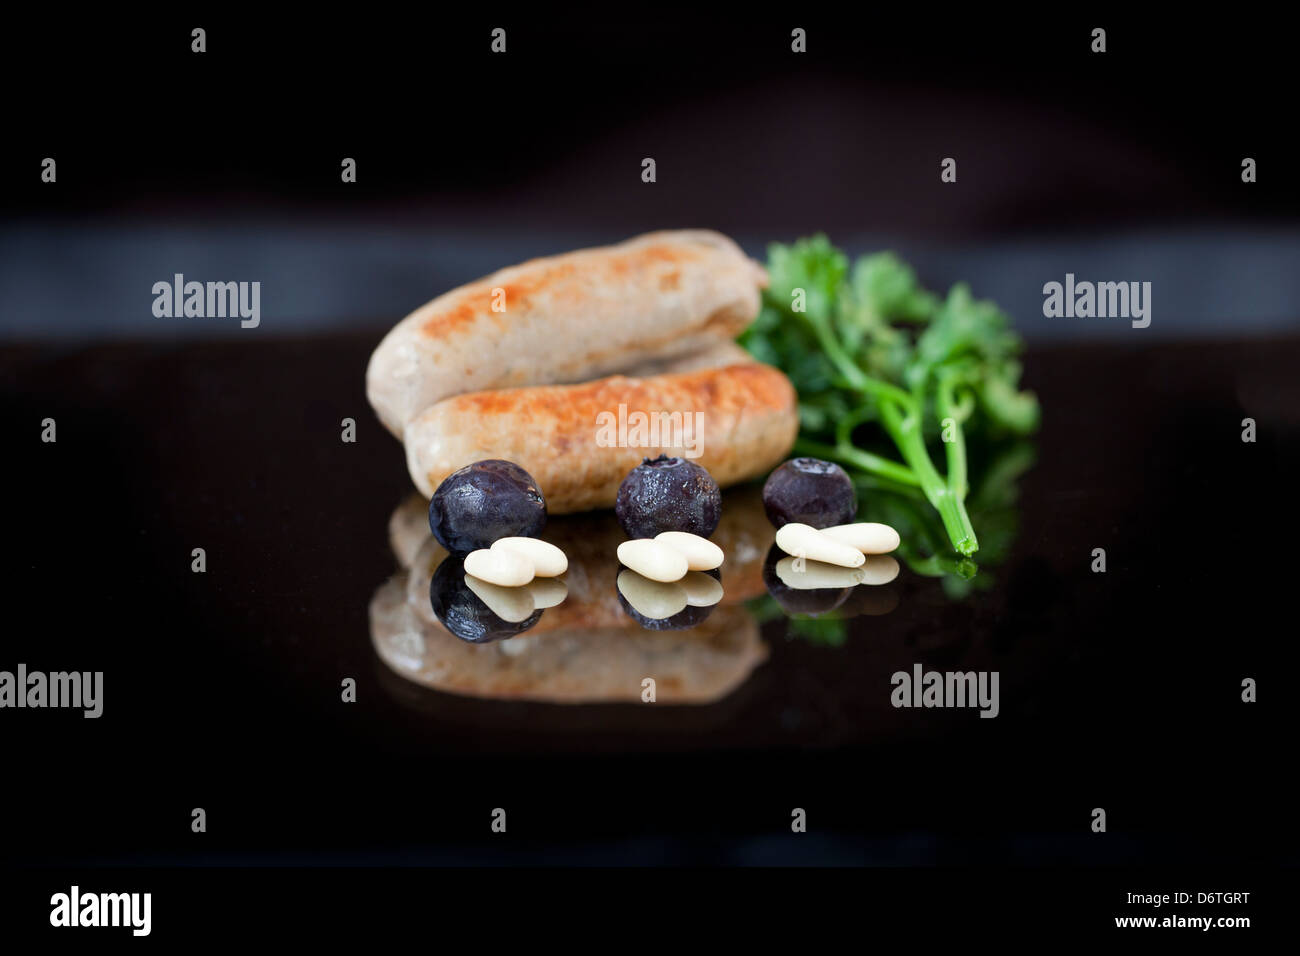 Anglais gastronomique les saucisses avec les bleuets, les noix de pin et le persil présenté sur un plat noir Banque D'Images